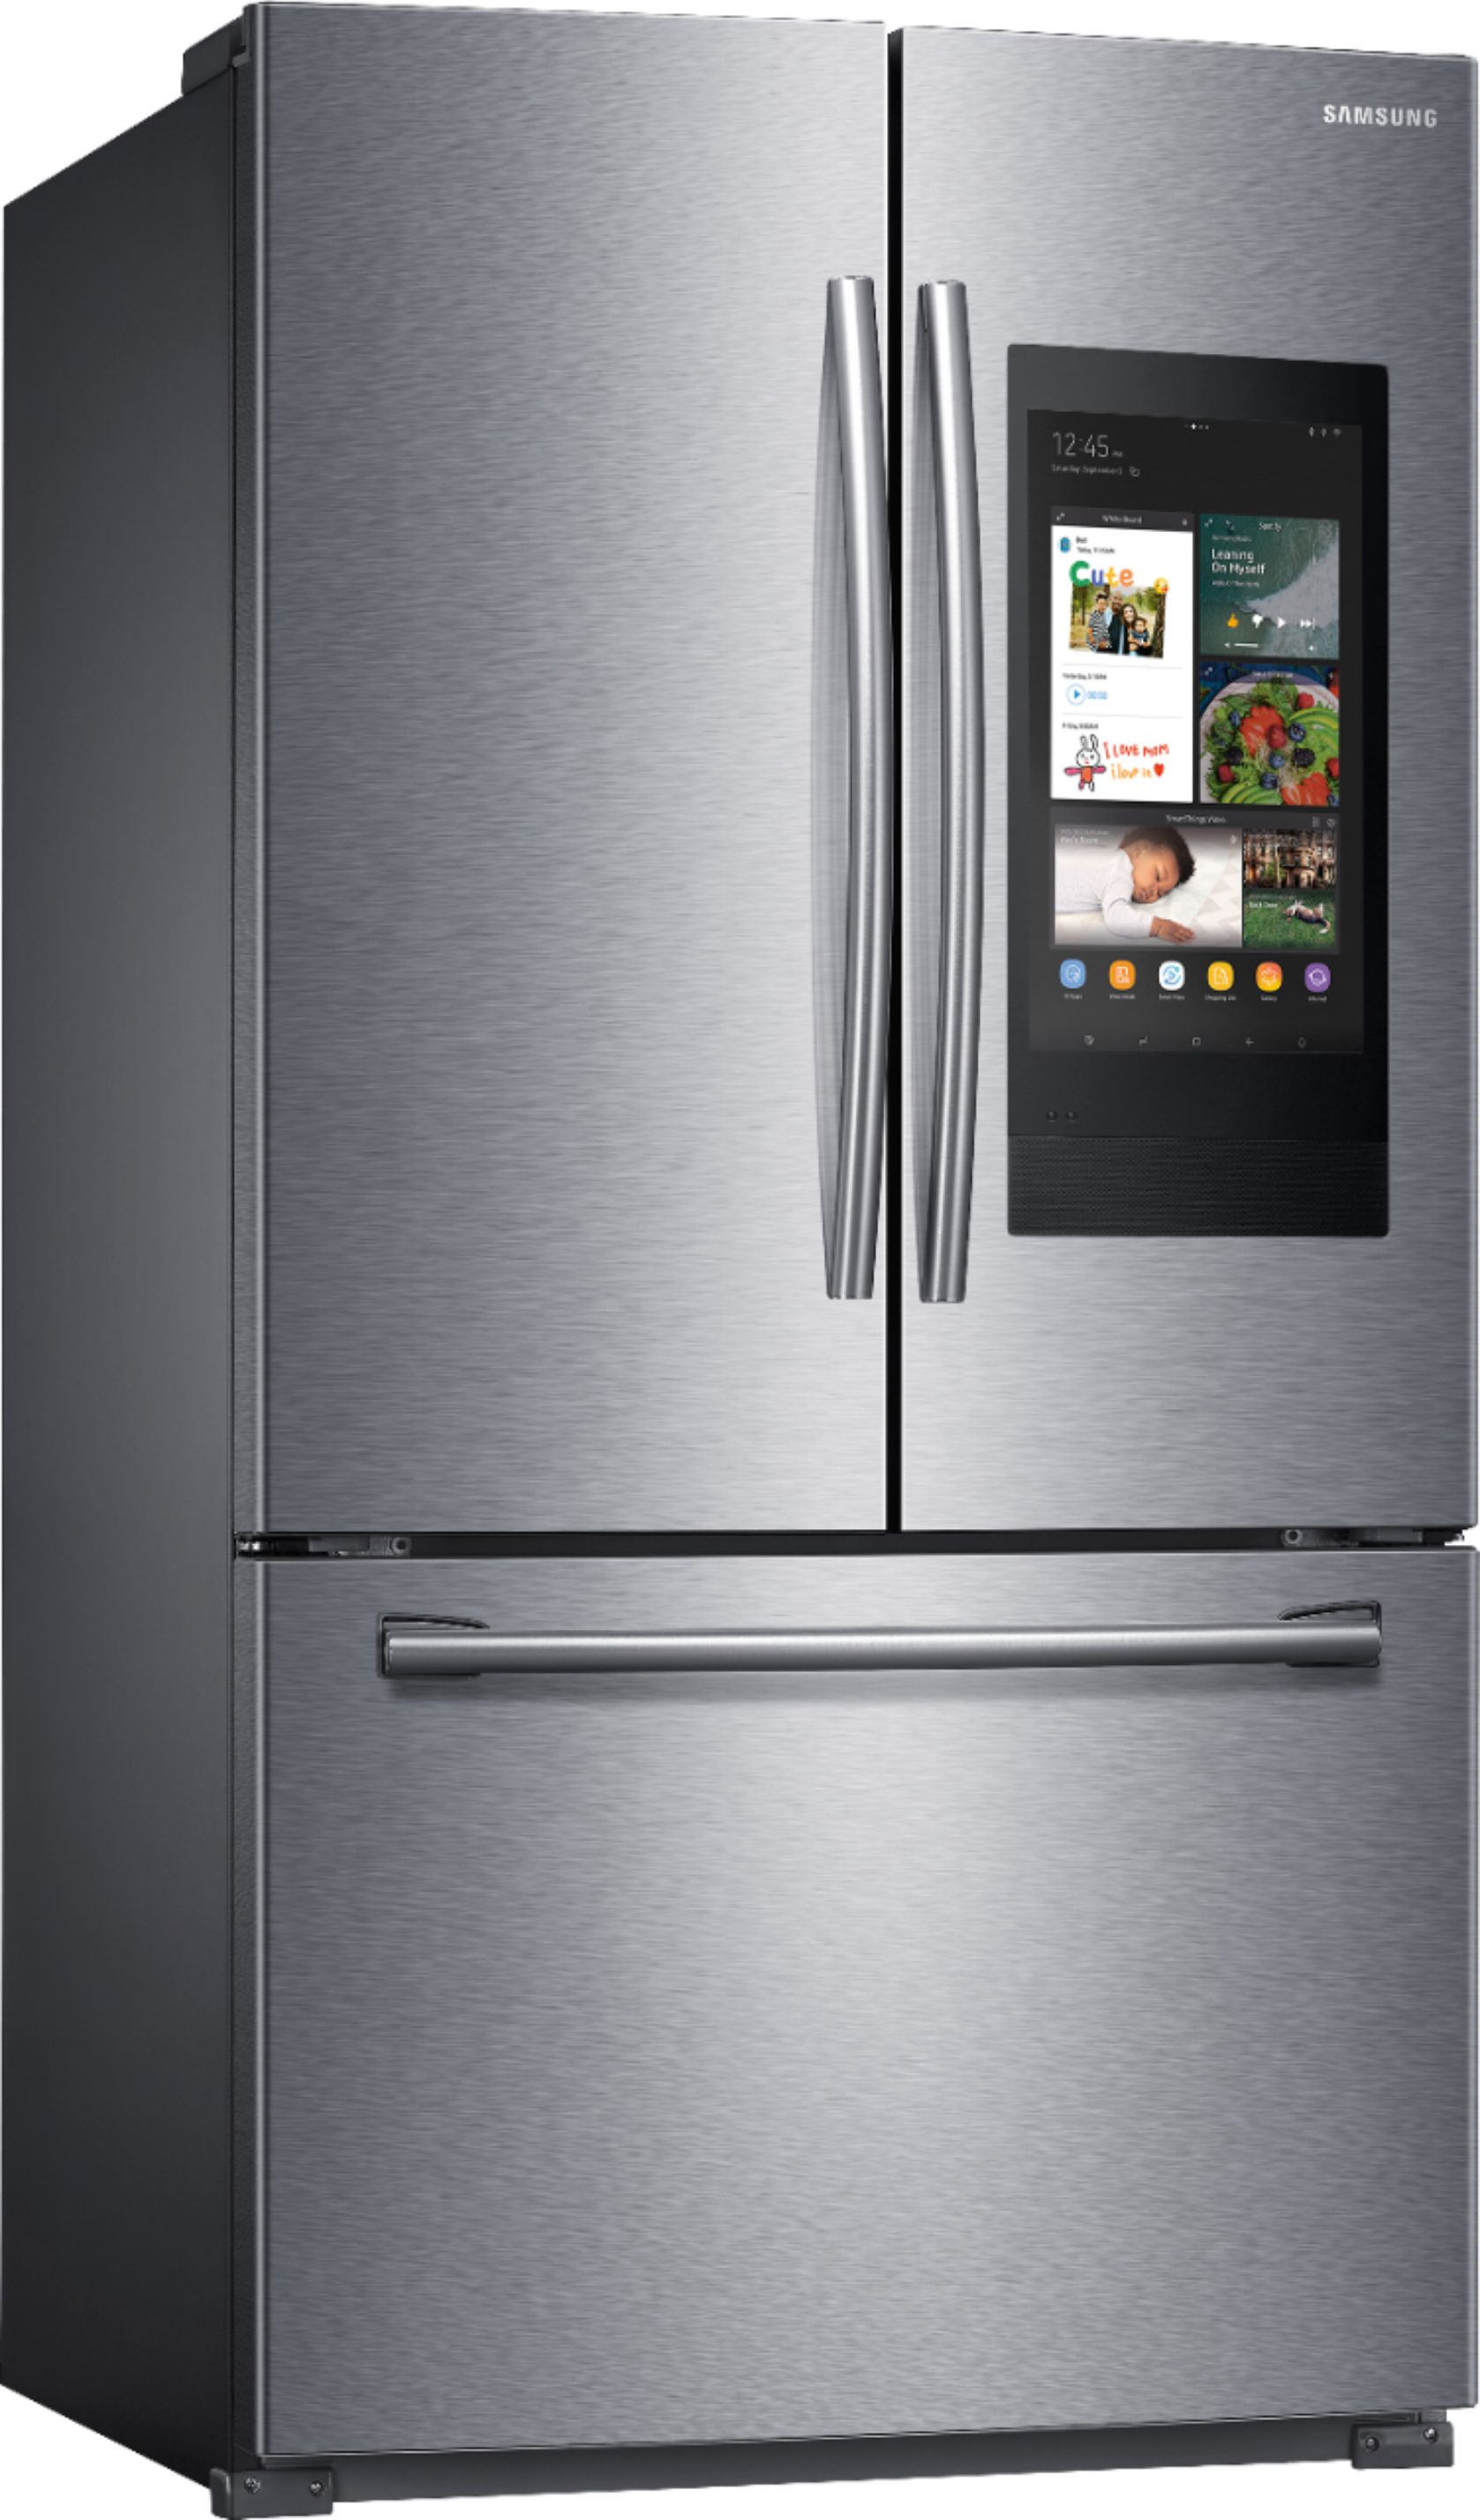 Angle View: Samsung - Bespoke 4-Door French Door Refrigerator panel - Bottom Panel - Matte Black